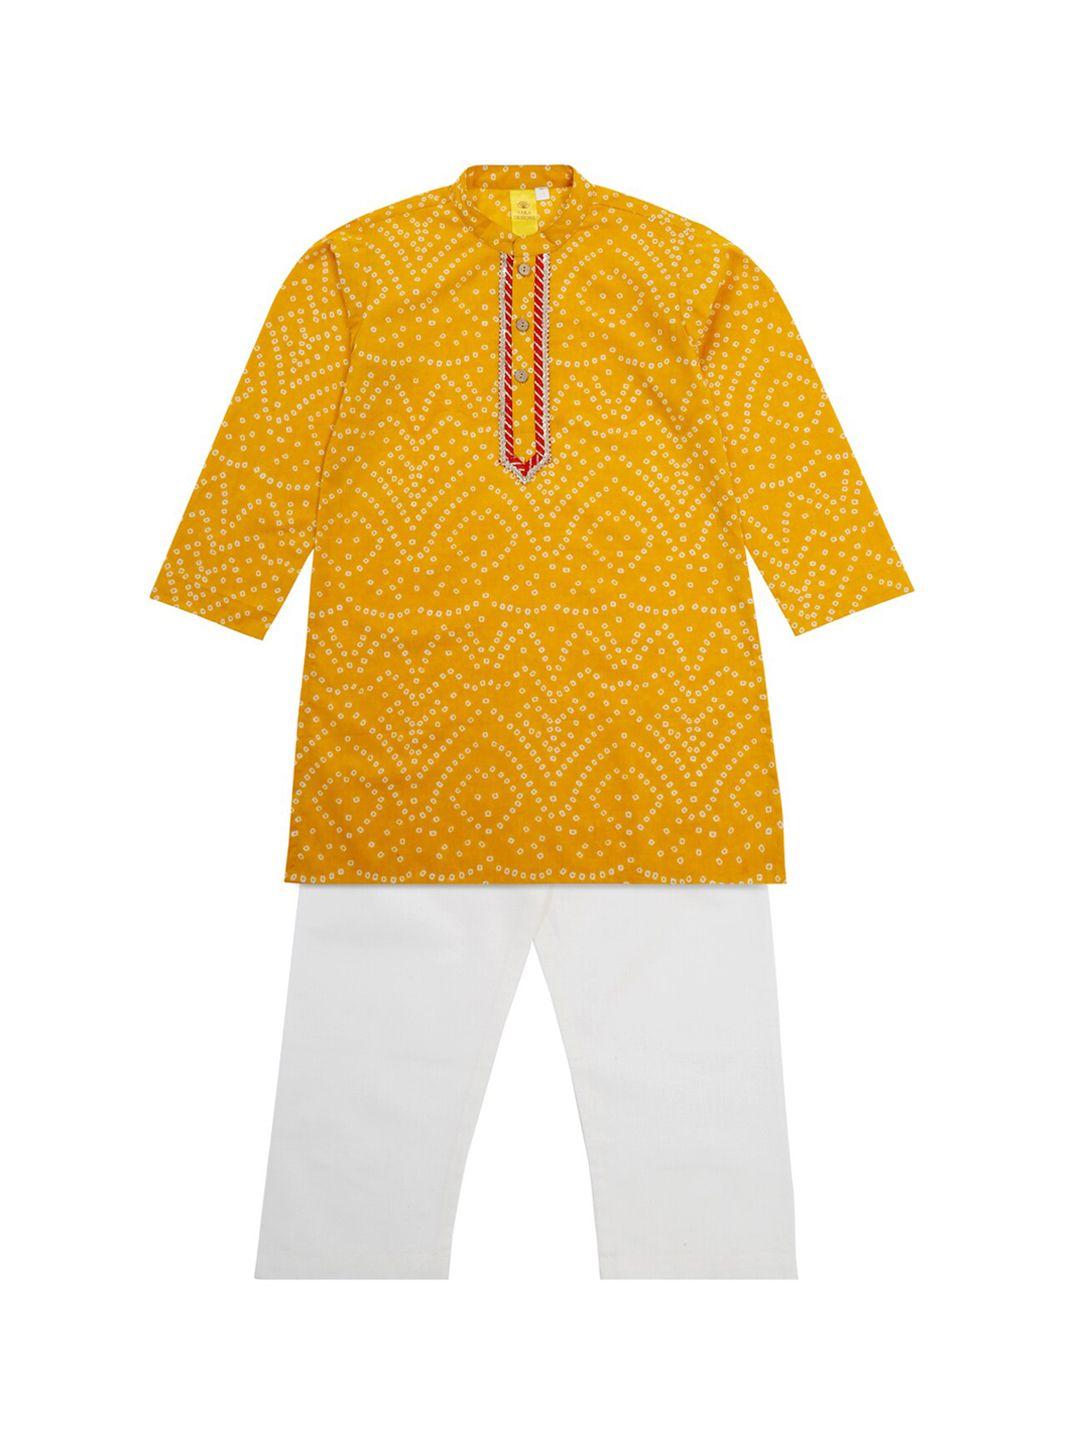 saka designs boys bandhani printed gotta patti kurta with pyjamas